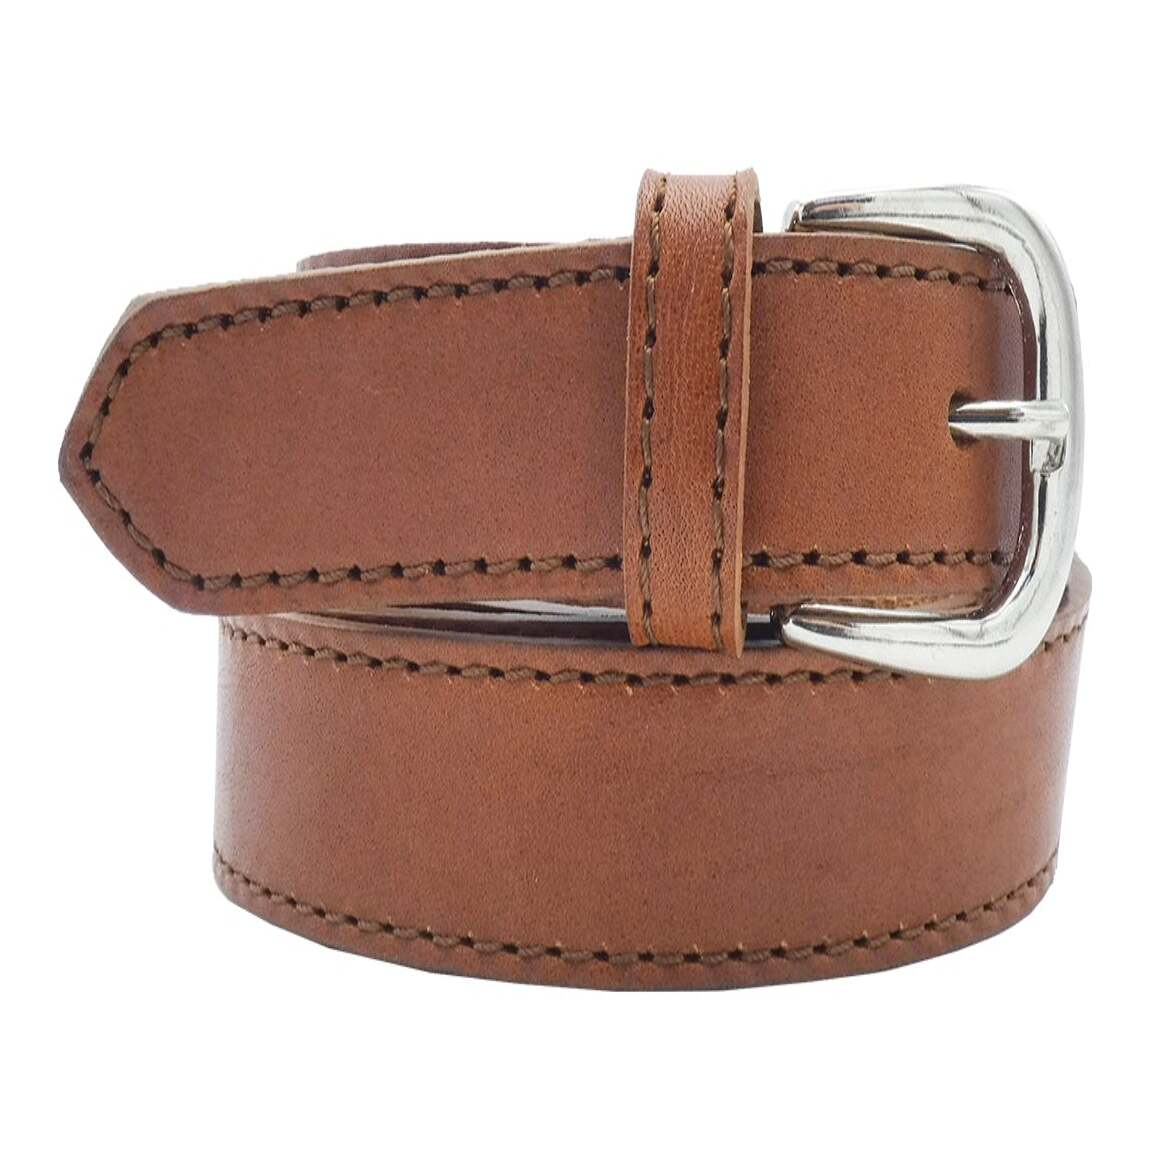 2.5cm Leonardo leather belt with satin nickel zamak buckle